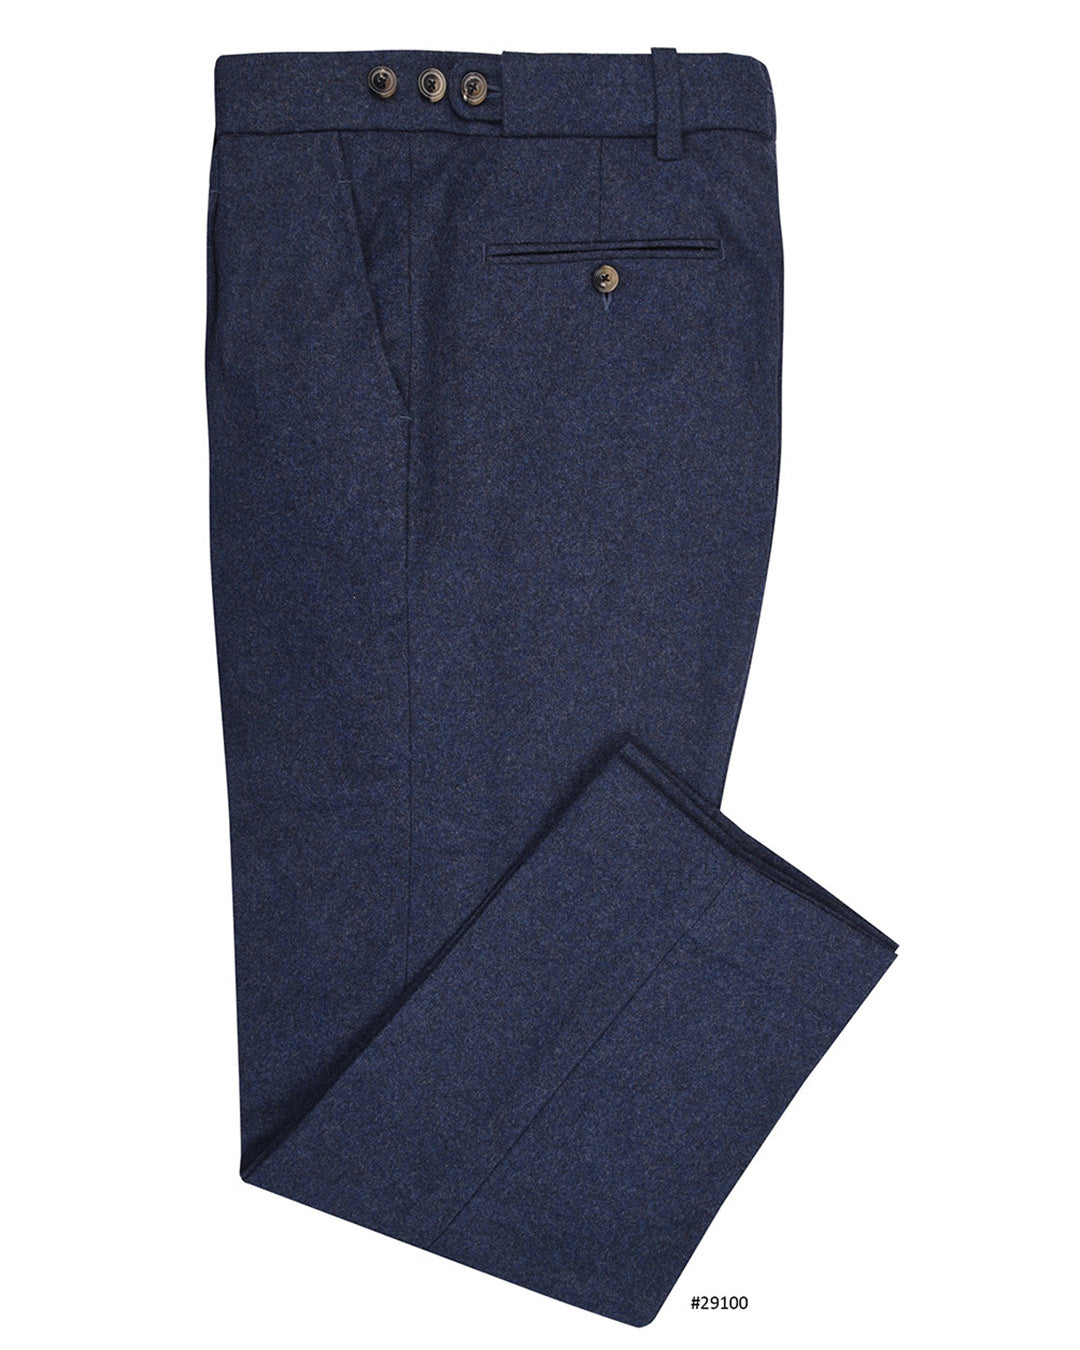 Minnis Flannel: Blue Twill Pants